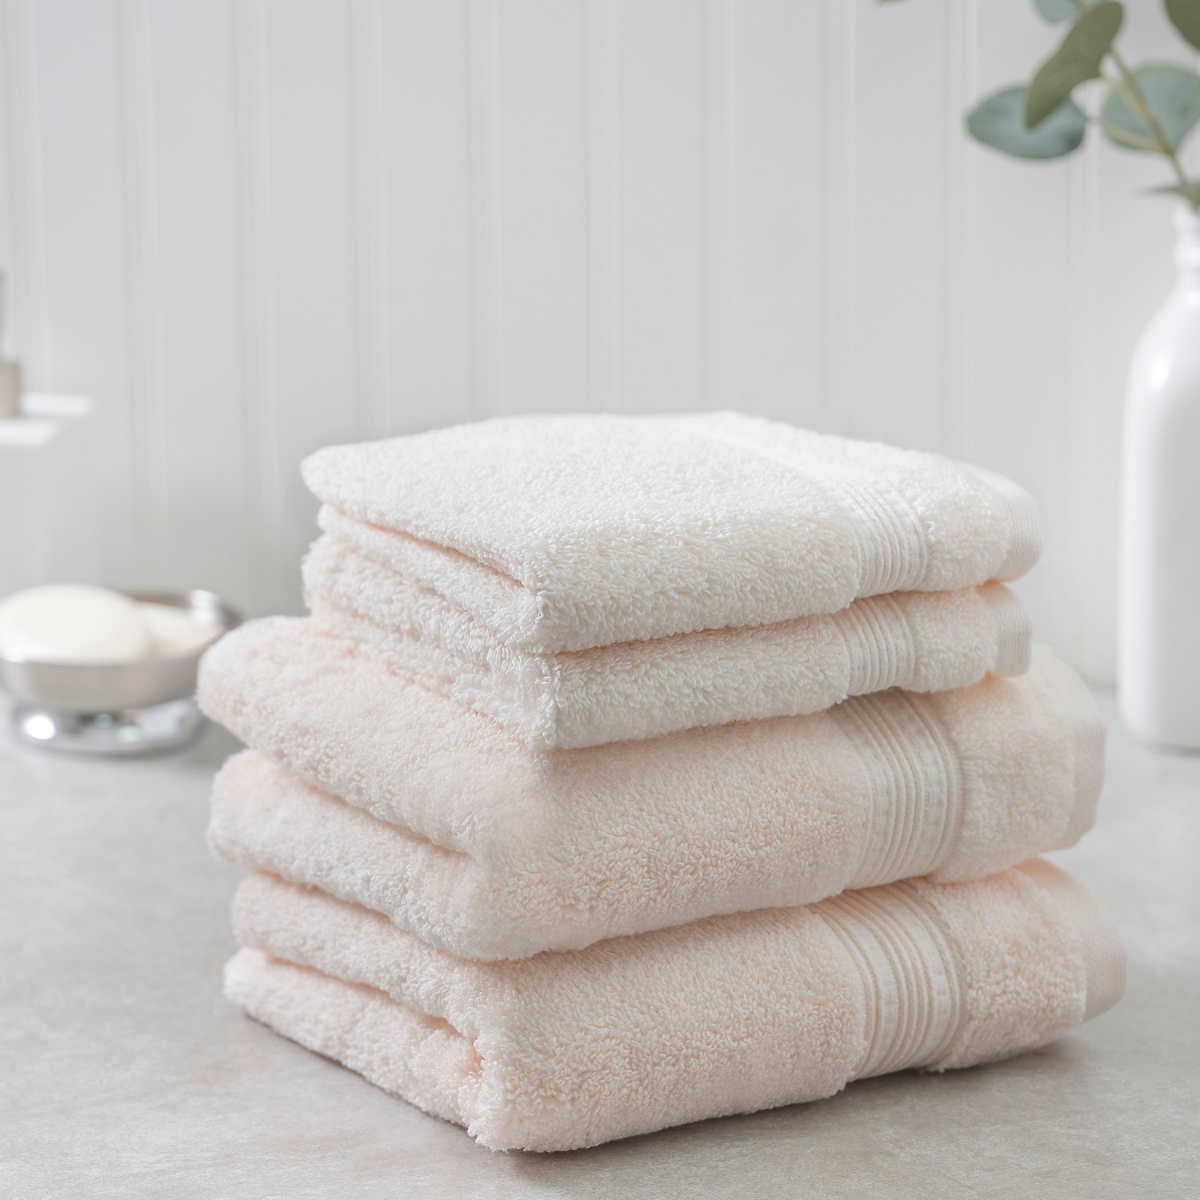 Charisma Soft Hygro Cotton Two piece Bath Towel Set Color White 